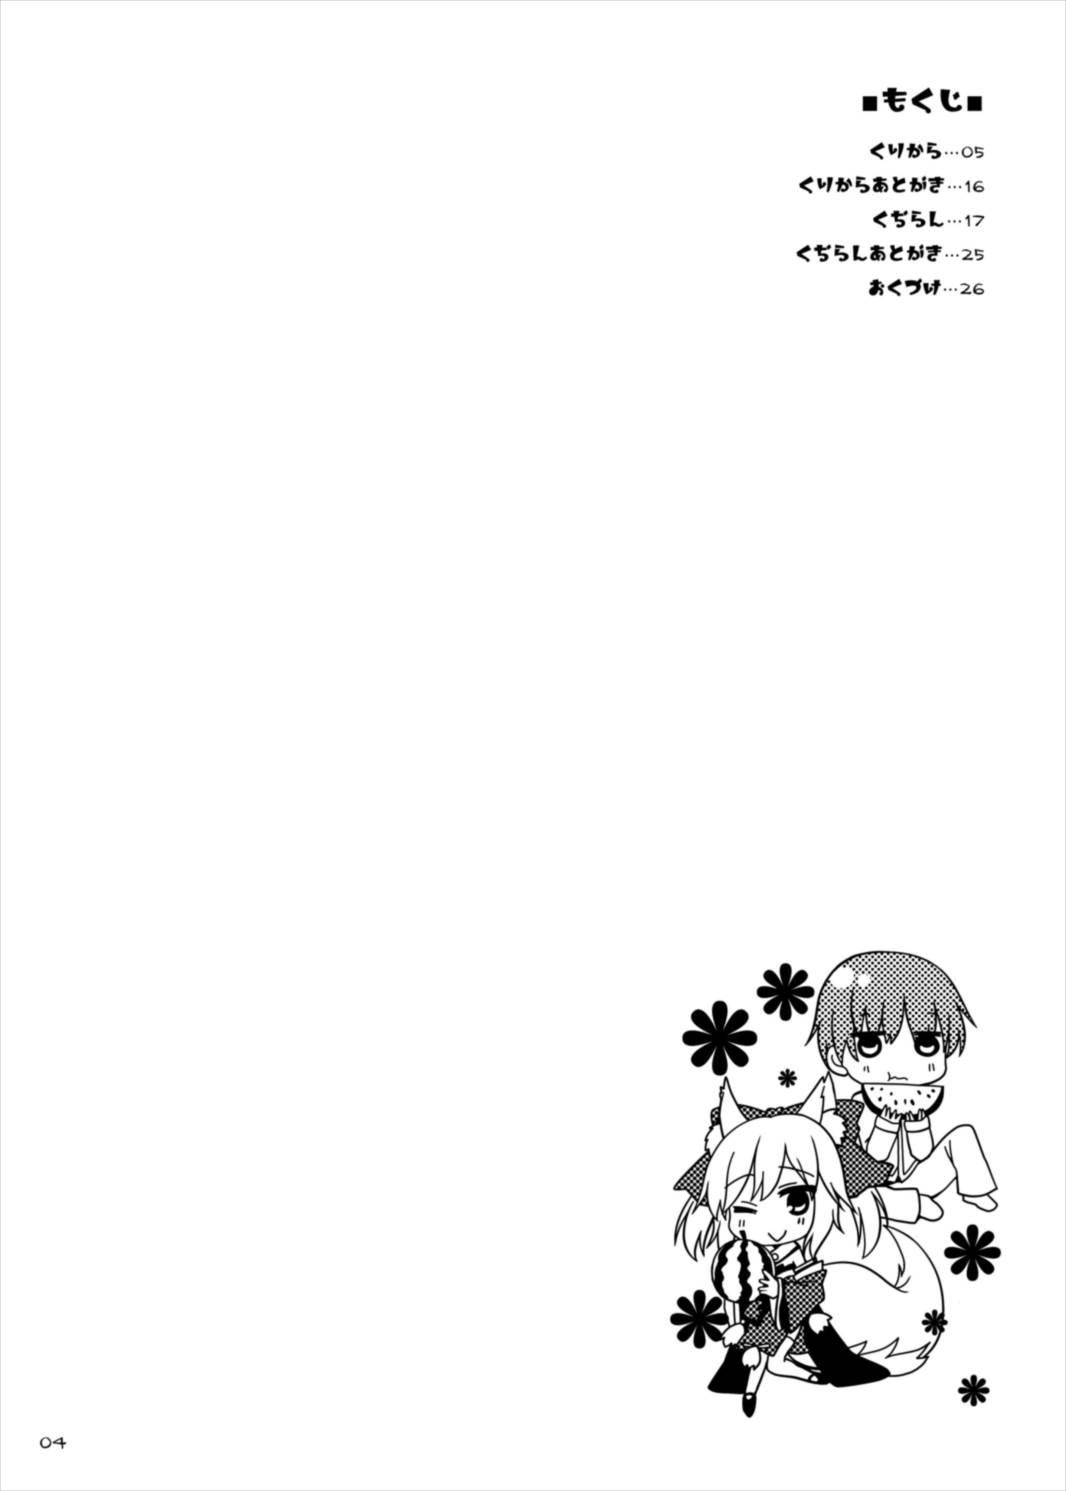 White Chick Goshujin-sama Oppai desu yo!! 4 - Fate extra Show - Page 4